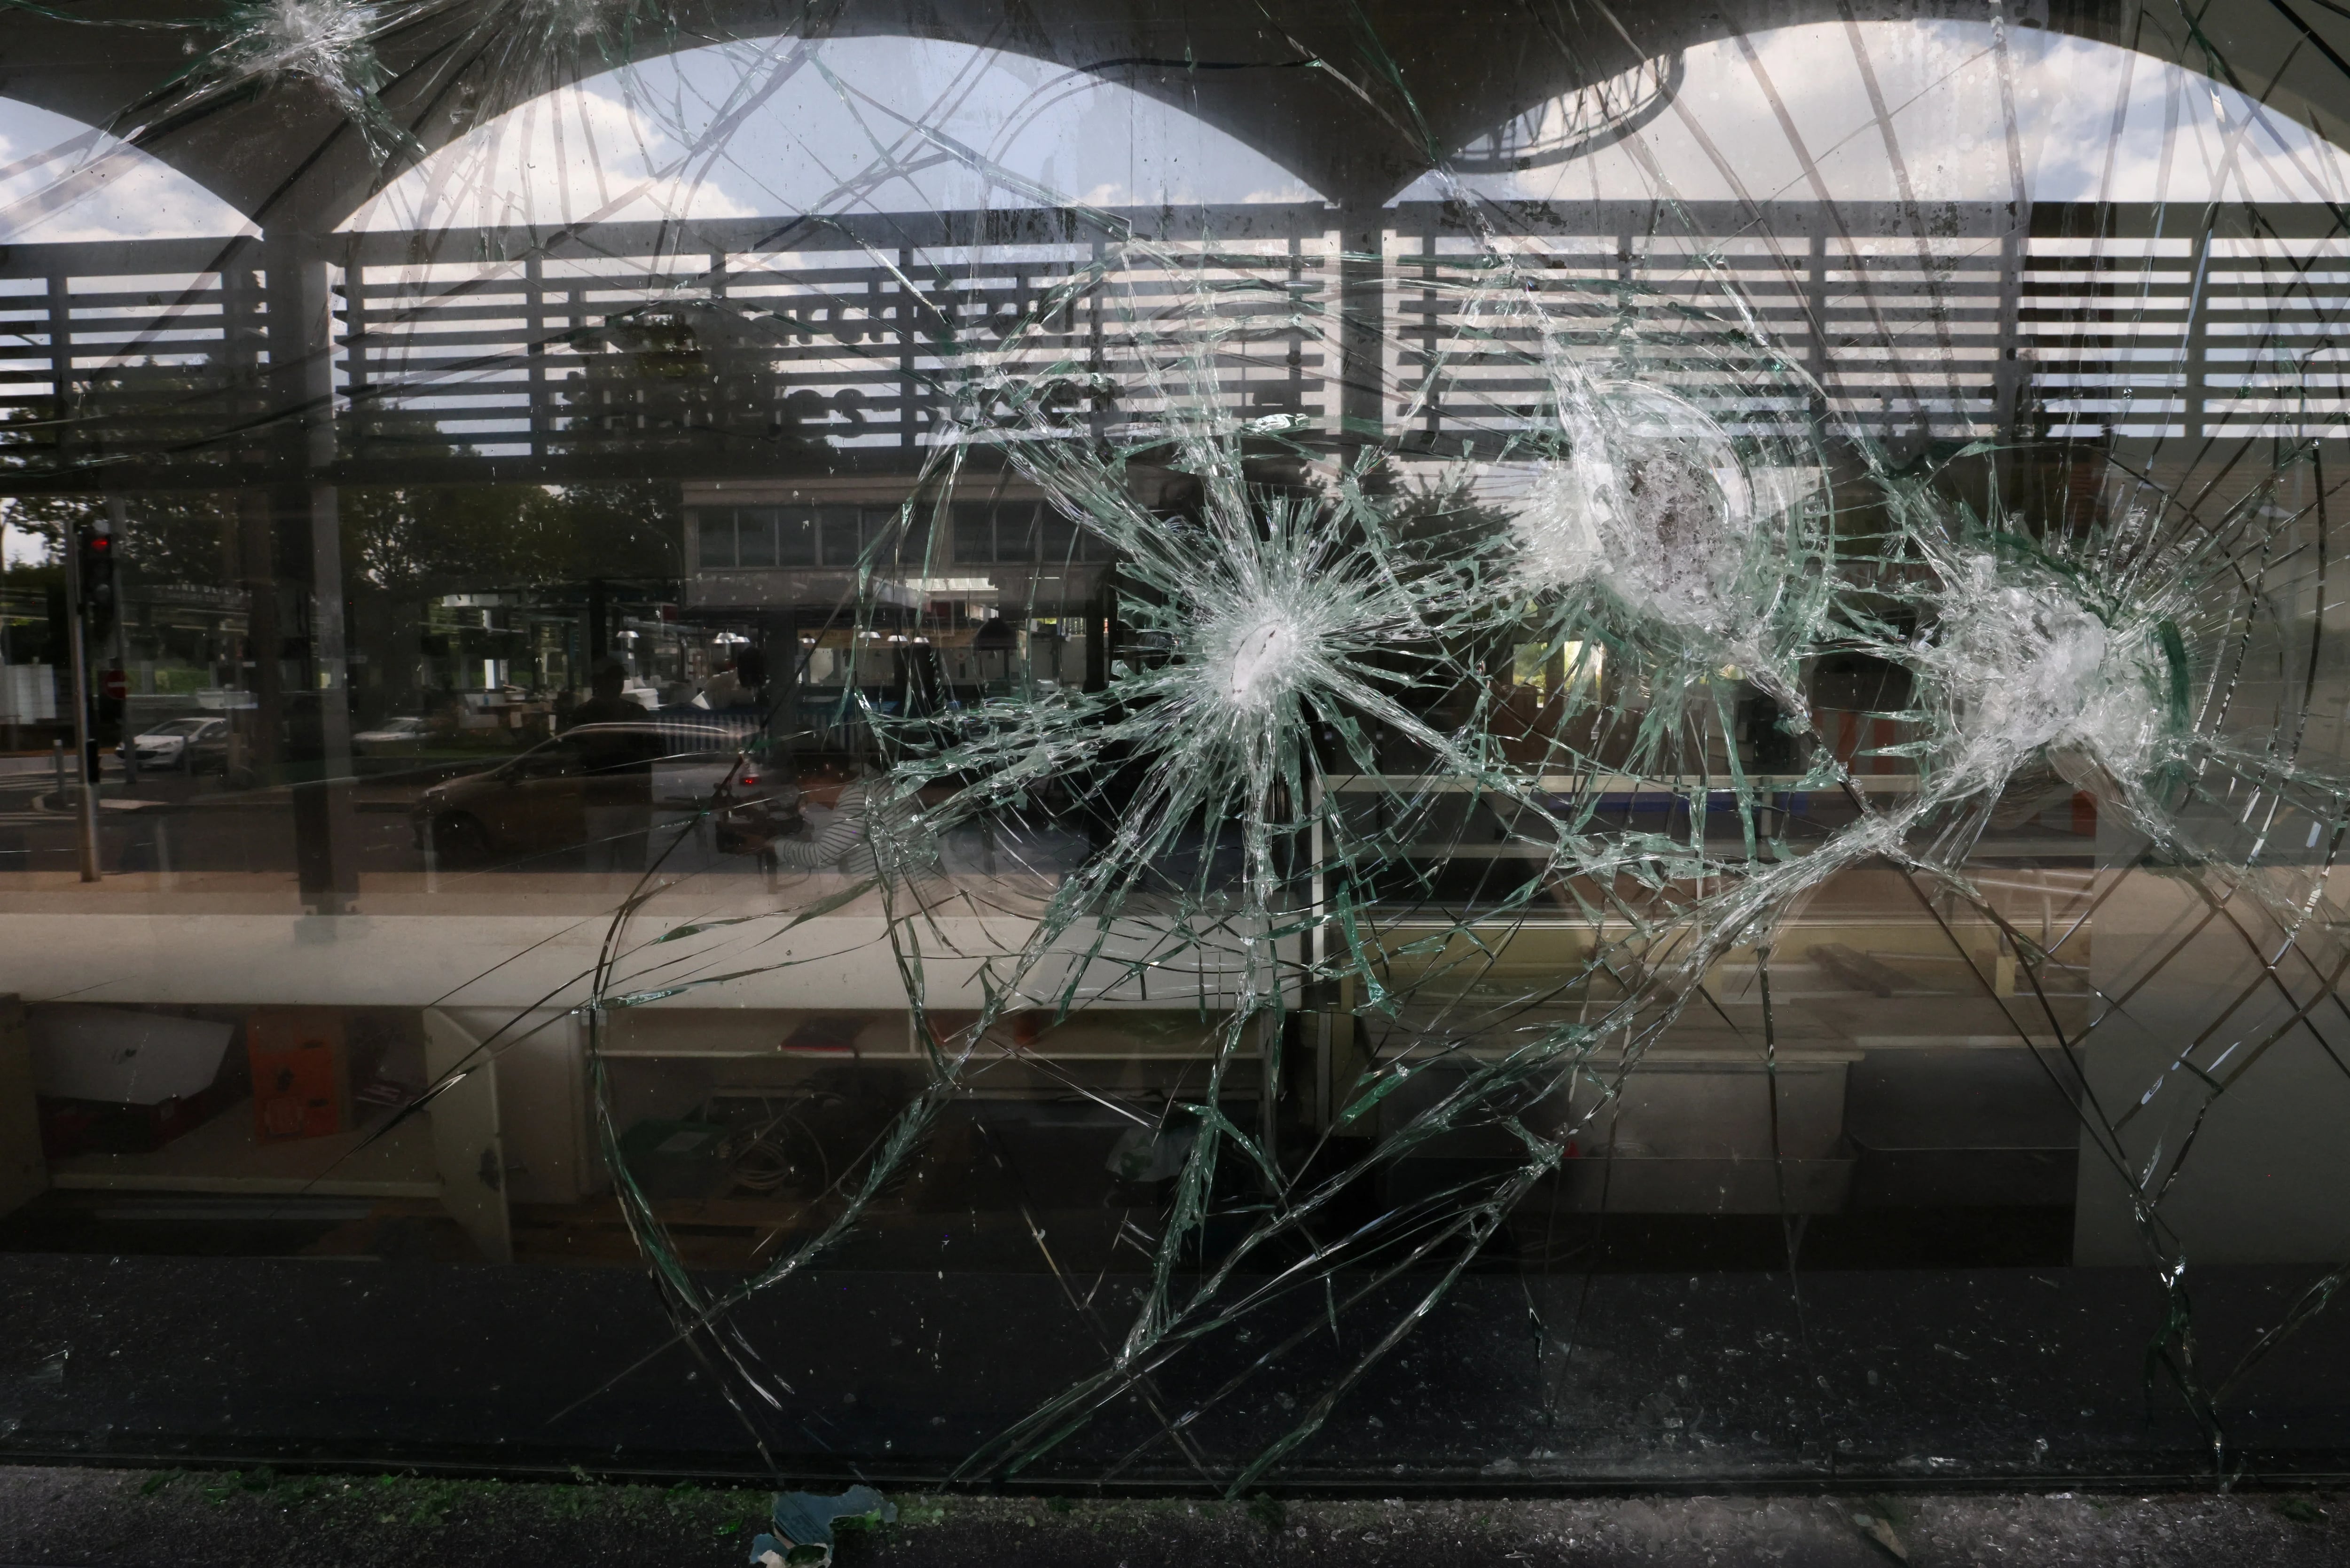 Lo que empezó como una revuelta en los suburbios se transformó en una oleada de odio y rabia contra el Estado y de violencia oportunista (REUTERS/Yves Herman)